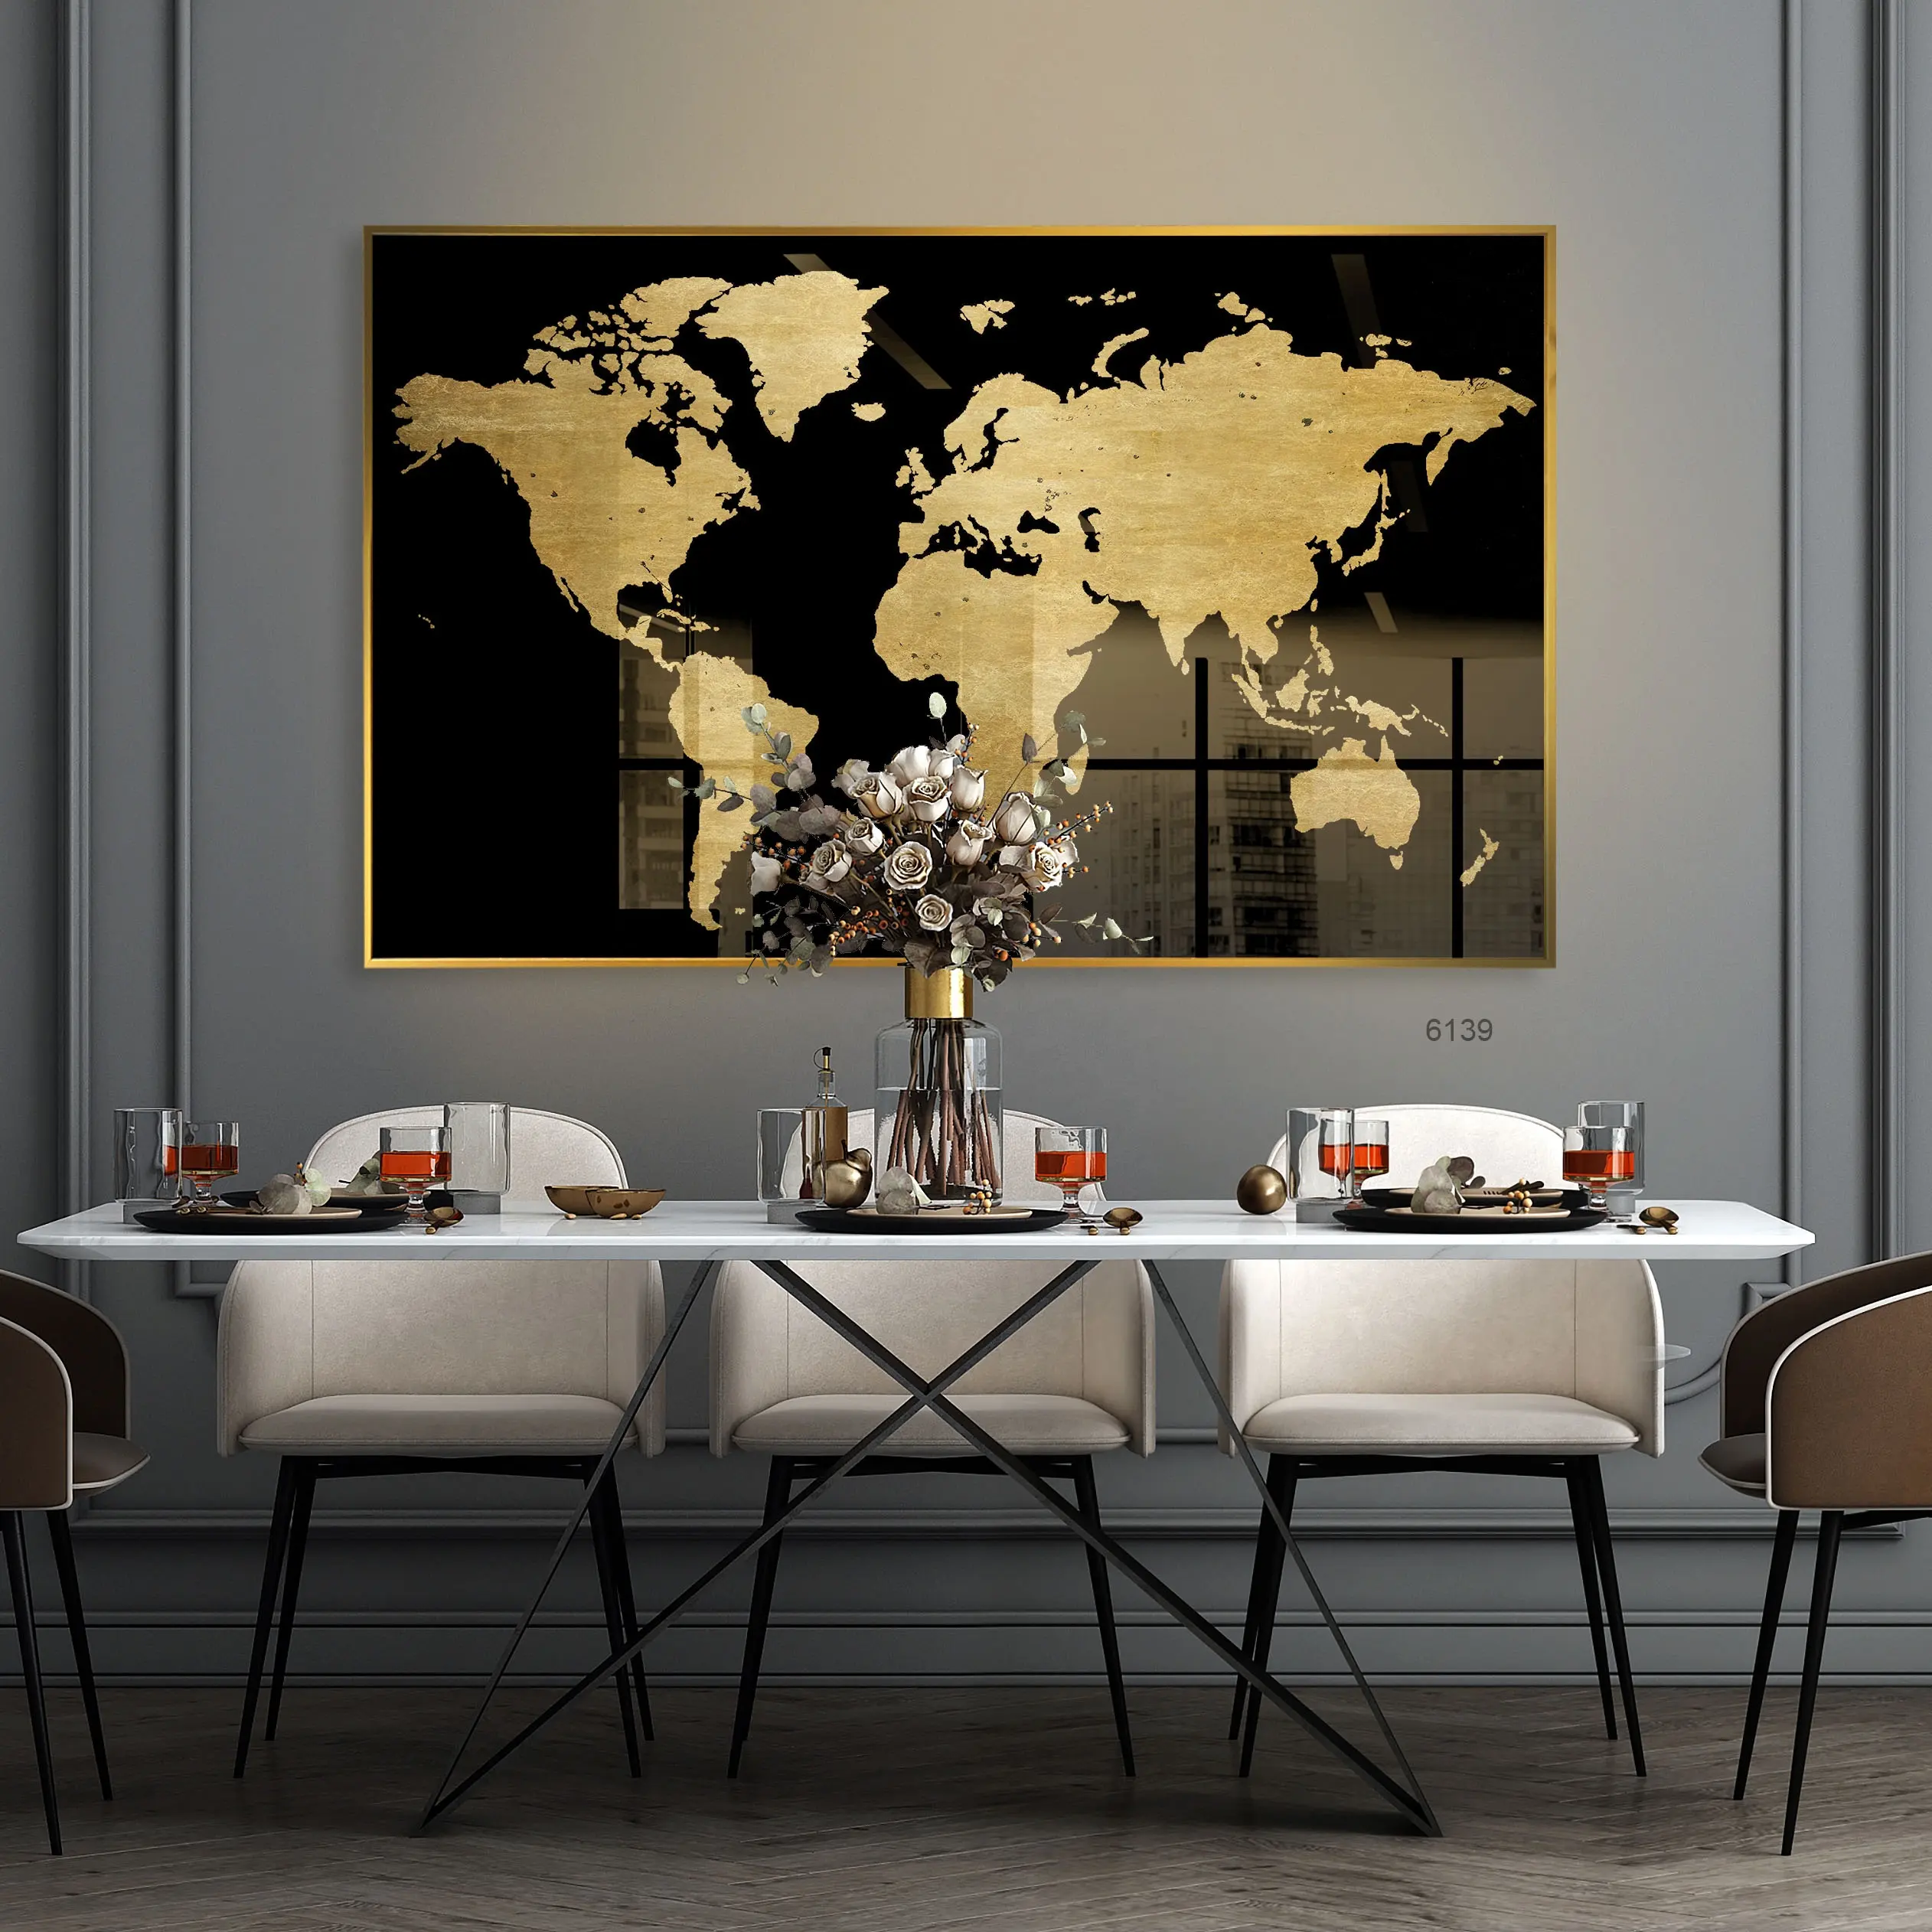 Crooge-pintura de porcelana de cristal para decoración del hogar, pintura de arte pop con graffiti moderno, impresión UV abstracta en negro y dorado, mapa del mundo